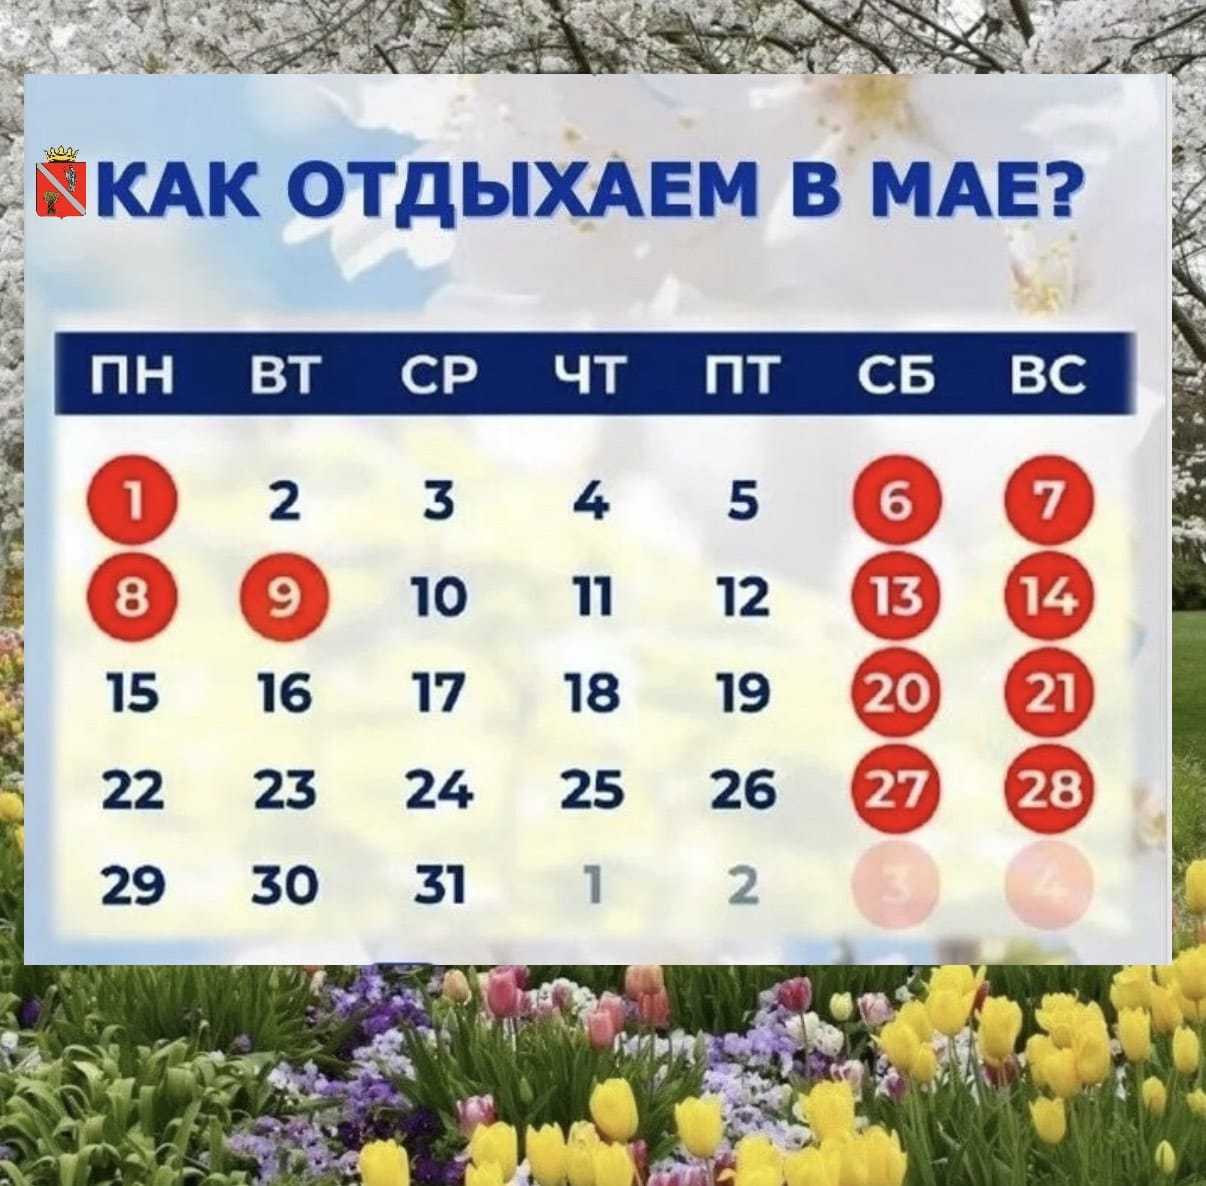 Майские каникулы в россии